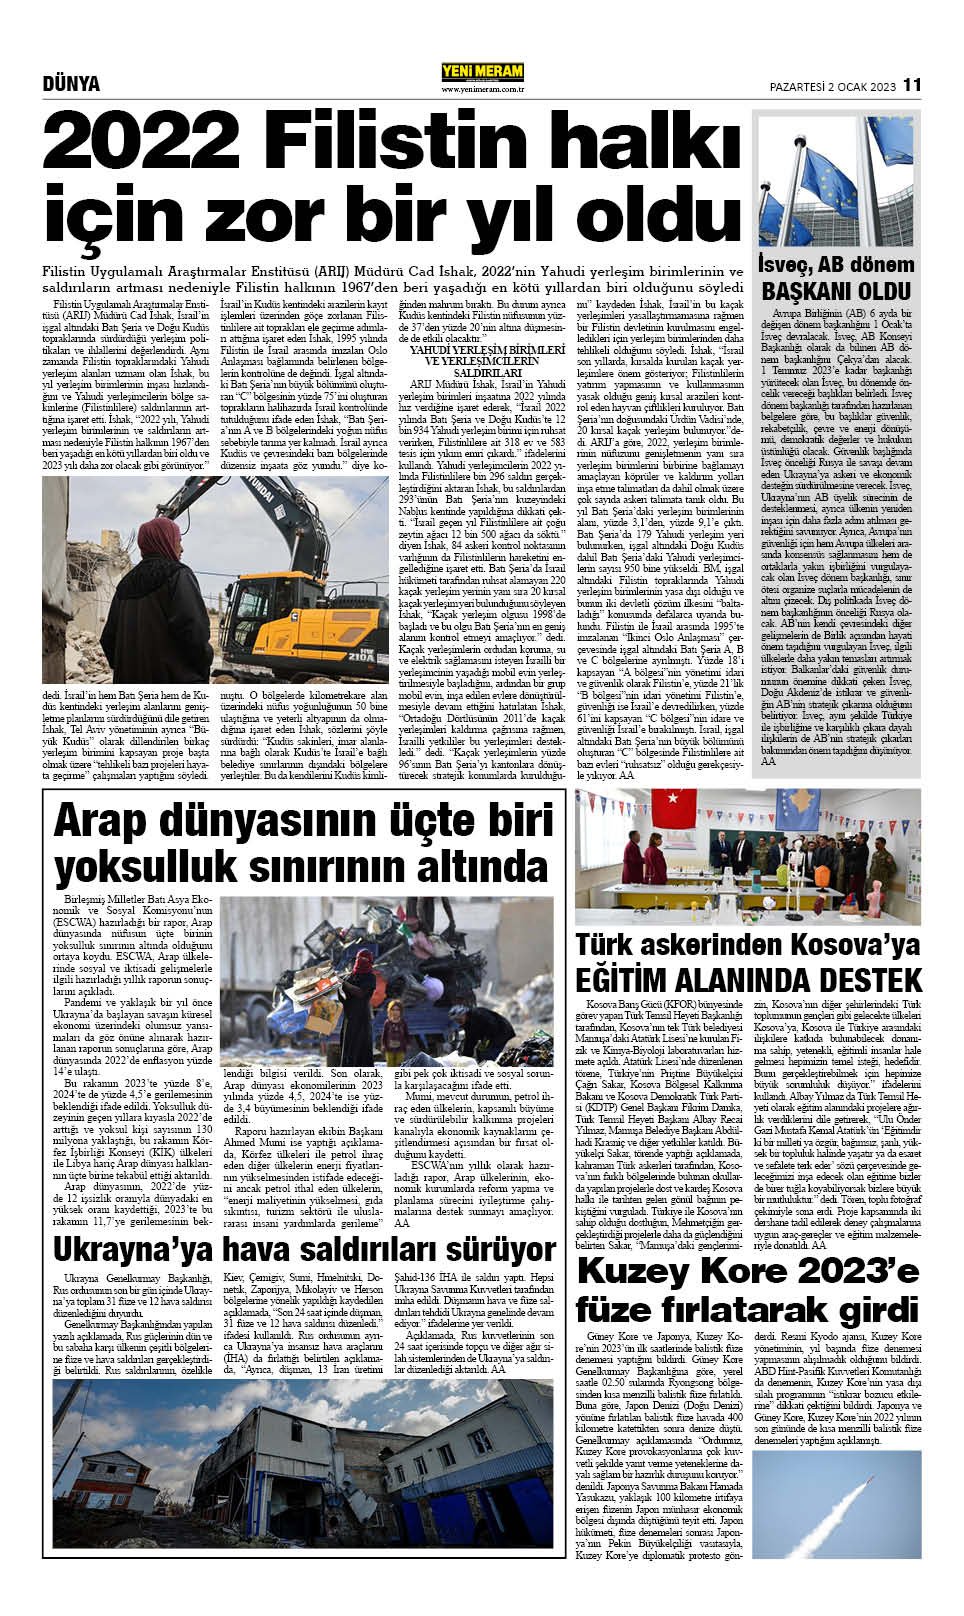 2 Ocak 2023 Yeni Meram Gazetesi
